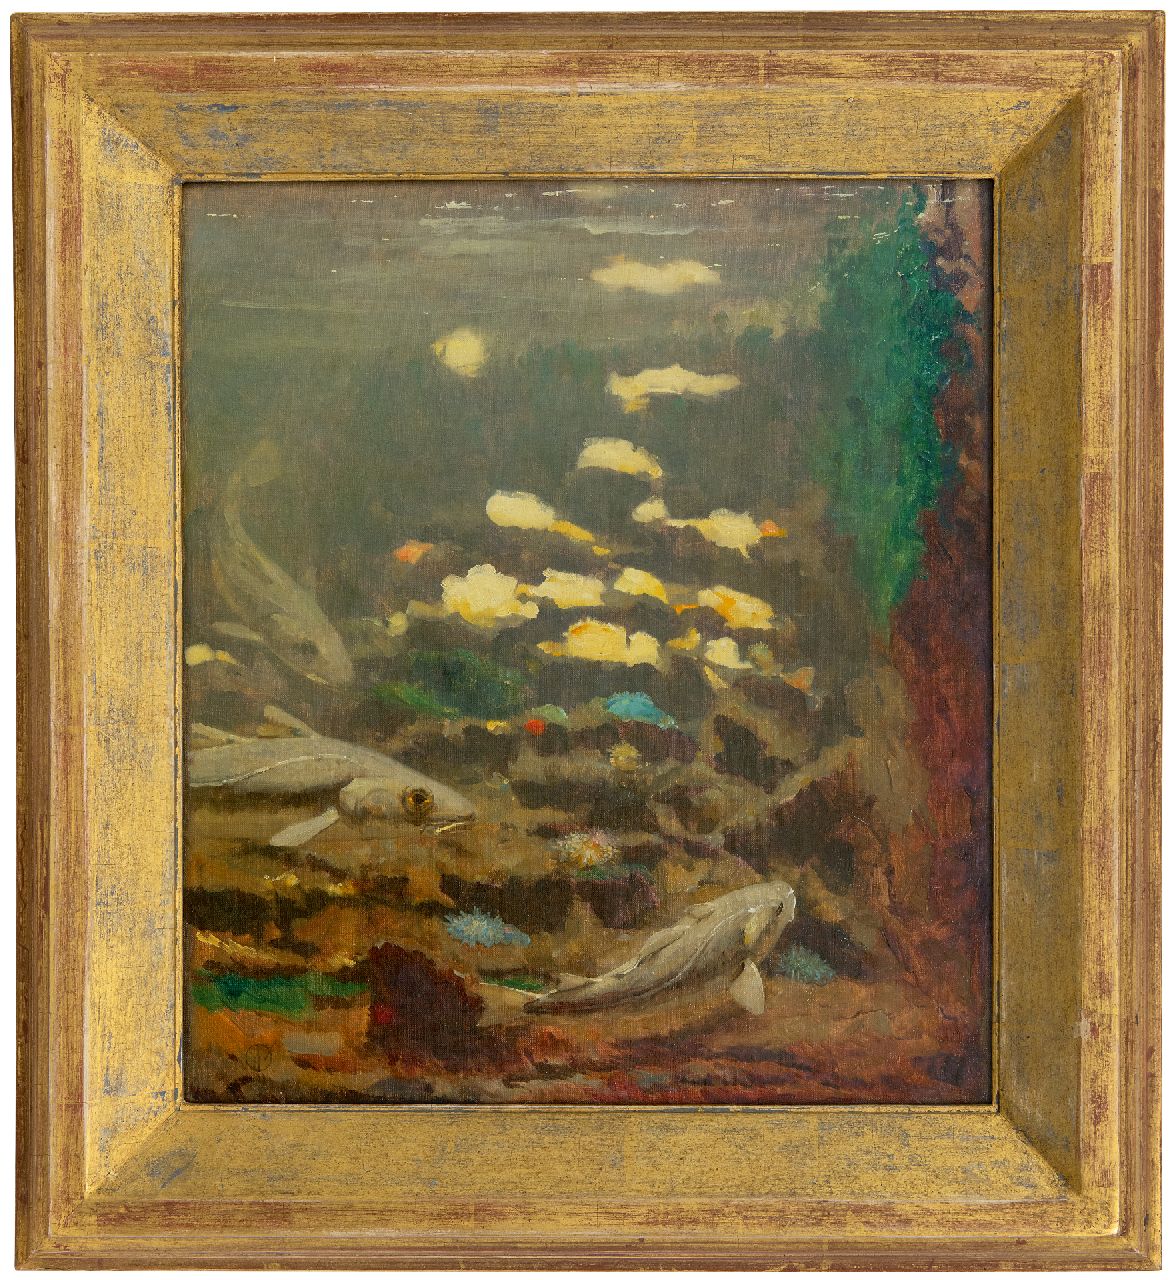 Dijsselhof G.W.  | Gerrit Willem Dijsselhof | Schilderijen te koop aangeboden | Kabeljauwen en anemonen, olieverf op doek 40,3 x 35,0 cm, gesigneerd linksonder monogram